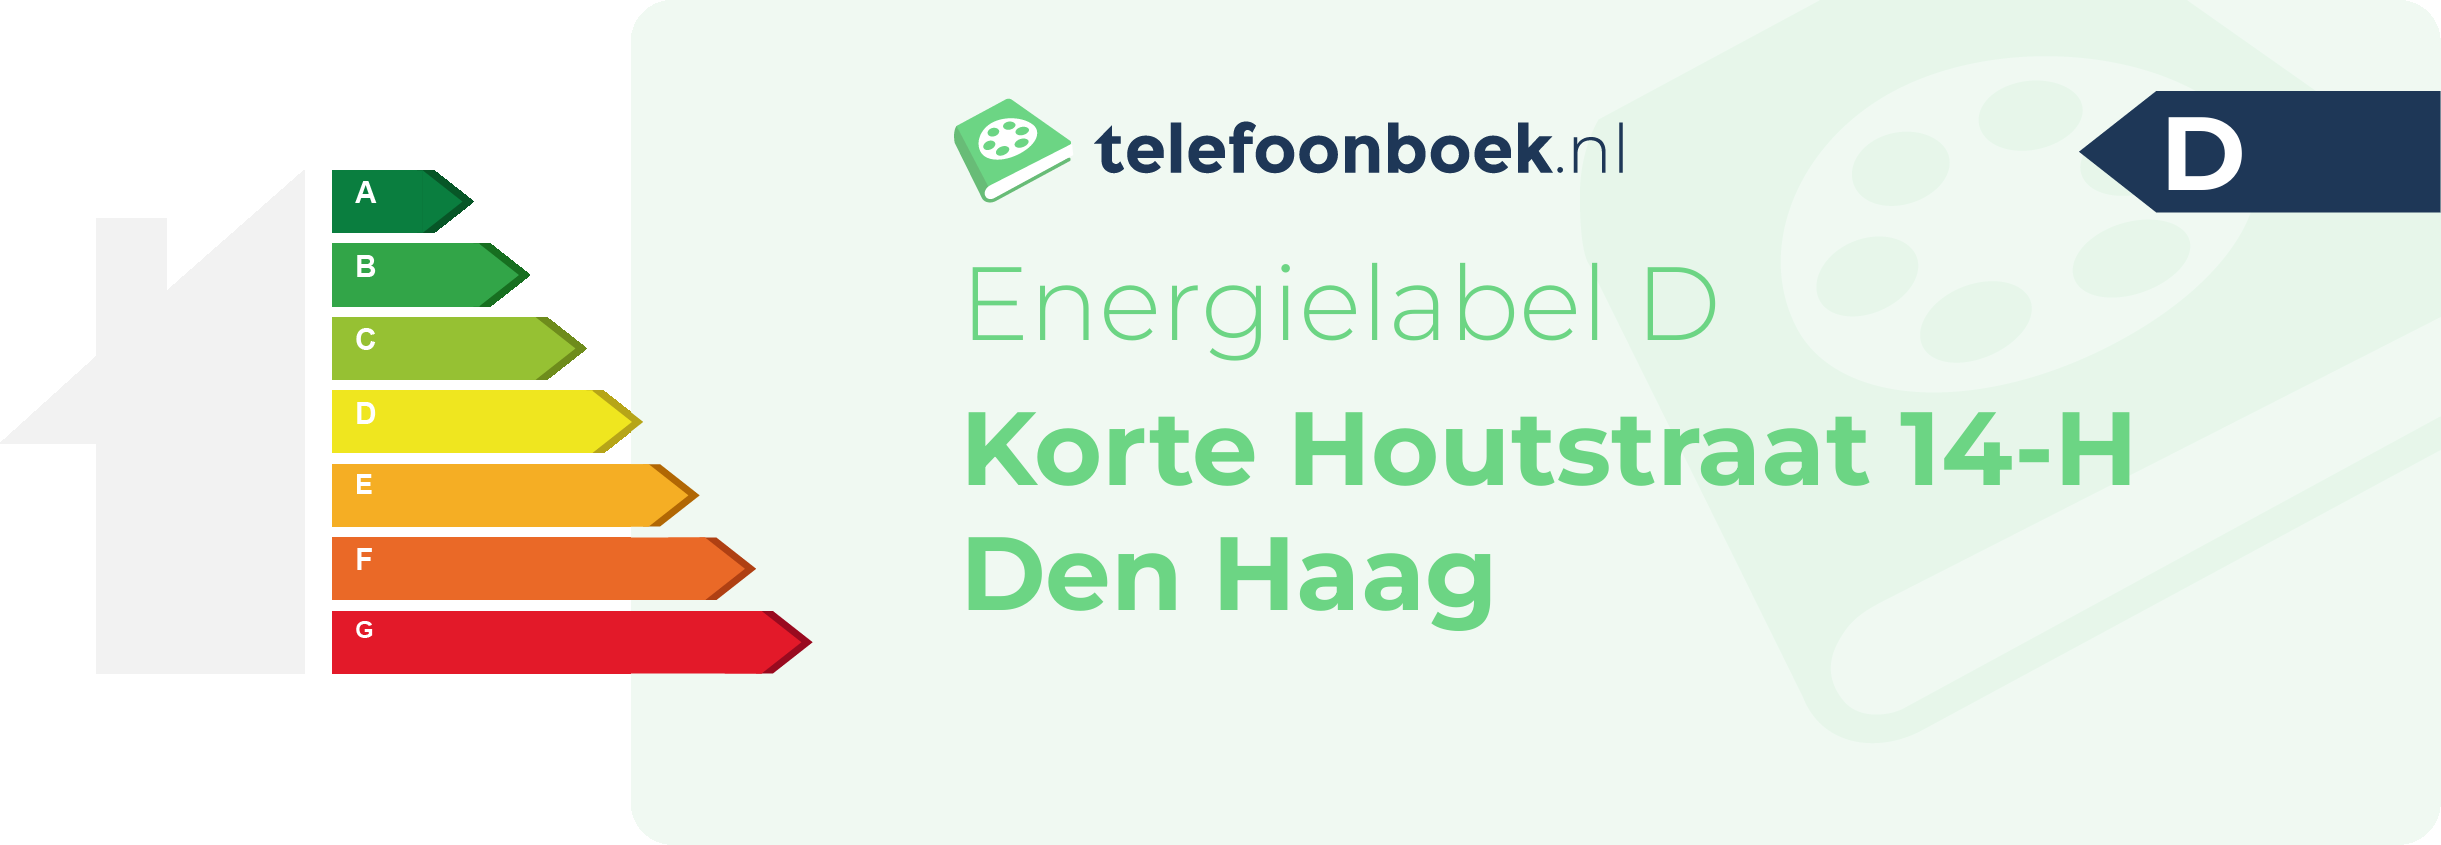 Energielabel Korte Houtstraat 14-H Den Haag